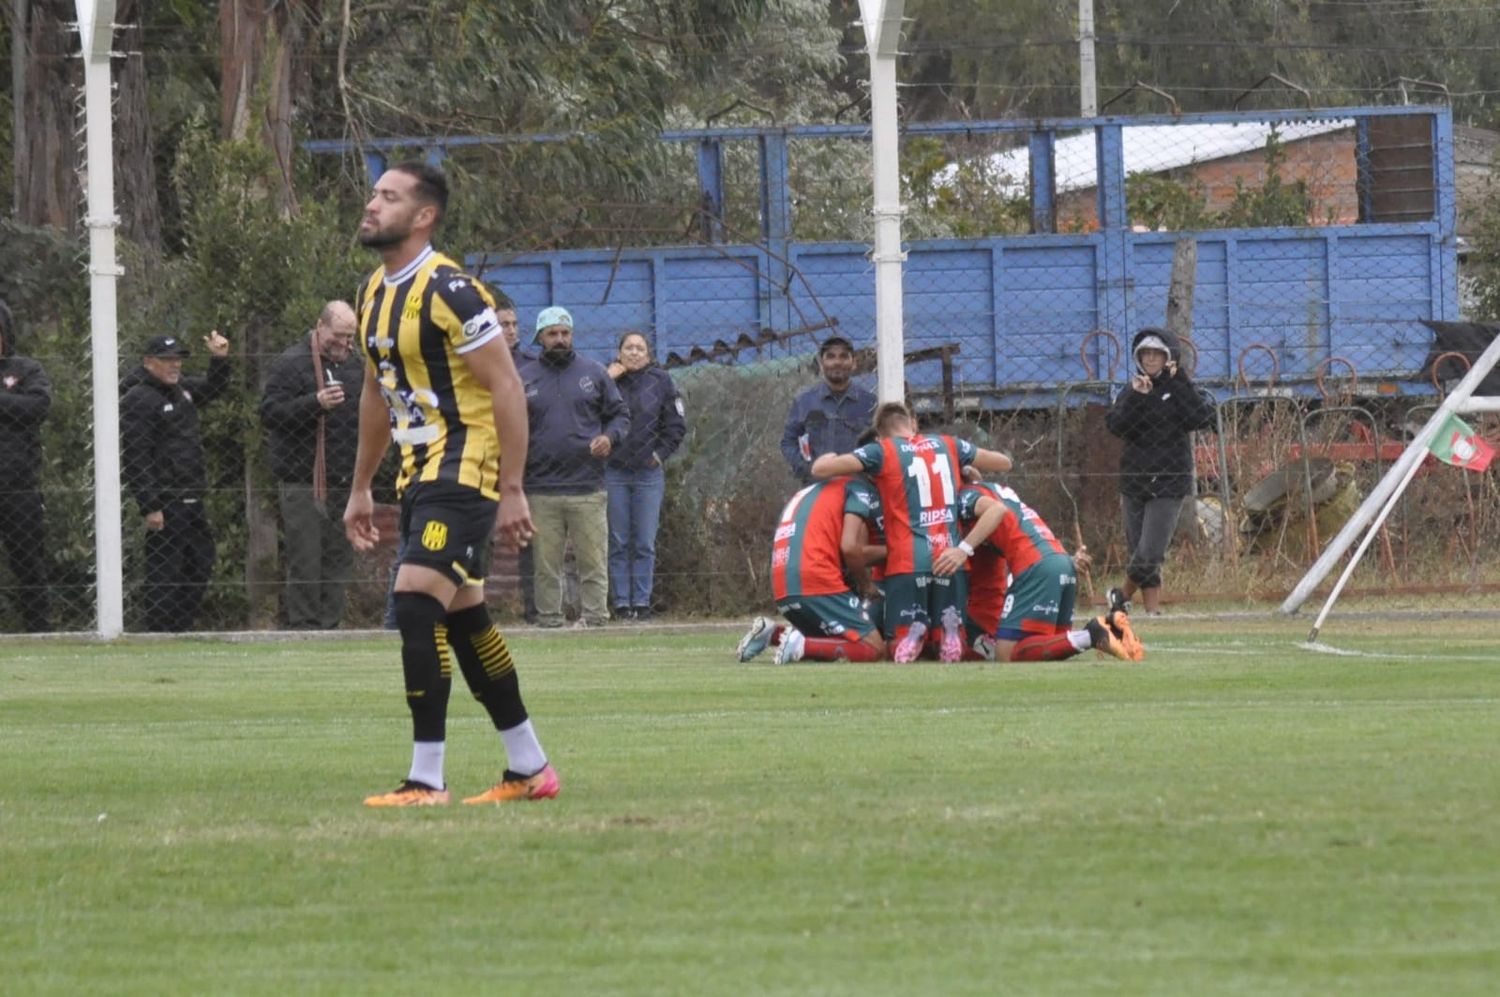 Círculo Deportivo hecho un racimo de jugadores. (Foto: Martín Angelini -Prensa Círculo)